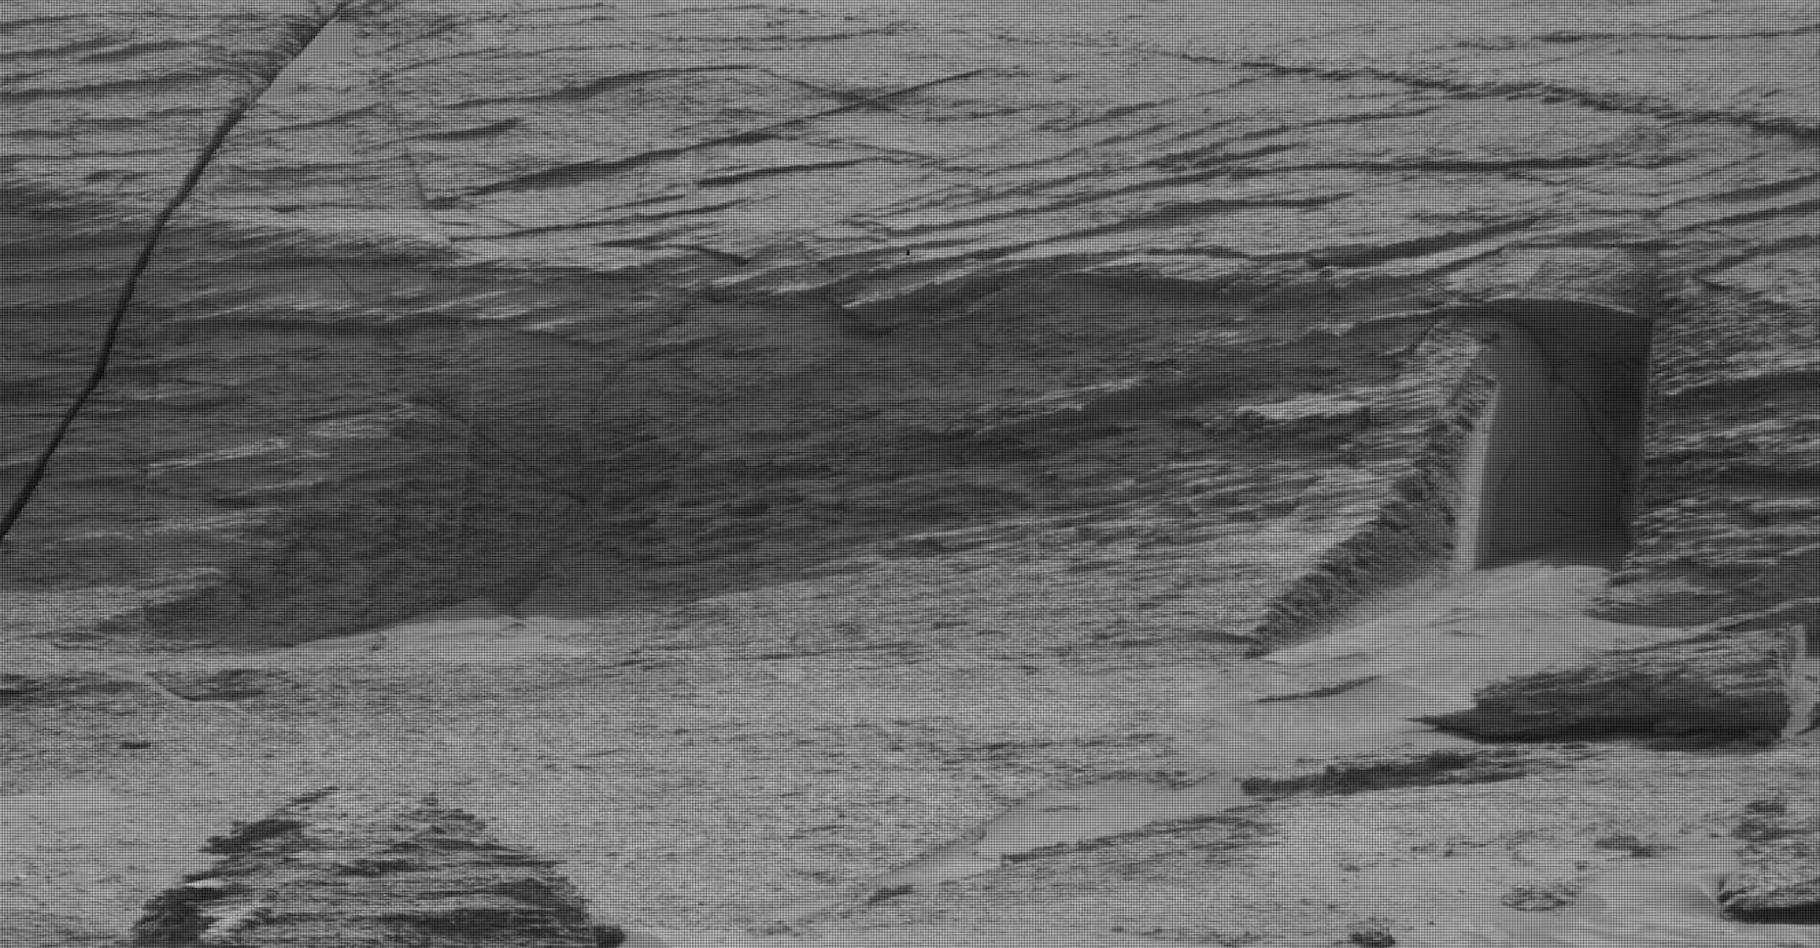 En détaillant les images renvoyées par le rover de la Nasa Curiosity, quelques-uns ont cru déceler une porte extraterrestre taillée dans la roche martienne. © Nasa, JLP-Caltech, MSSS